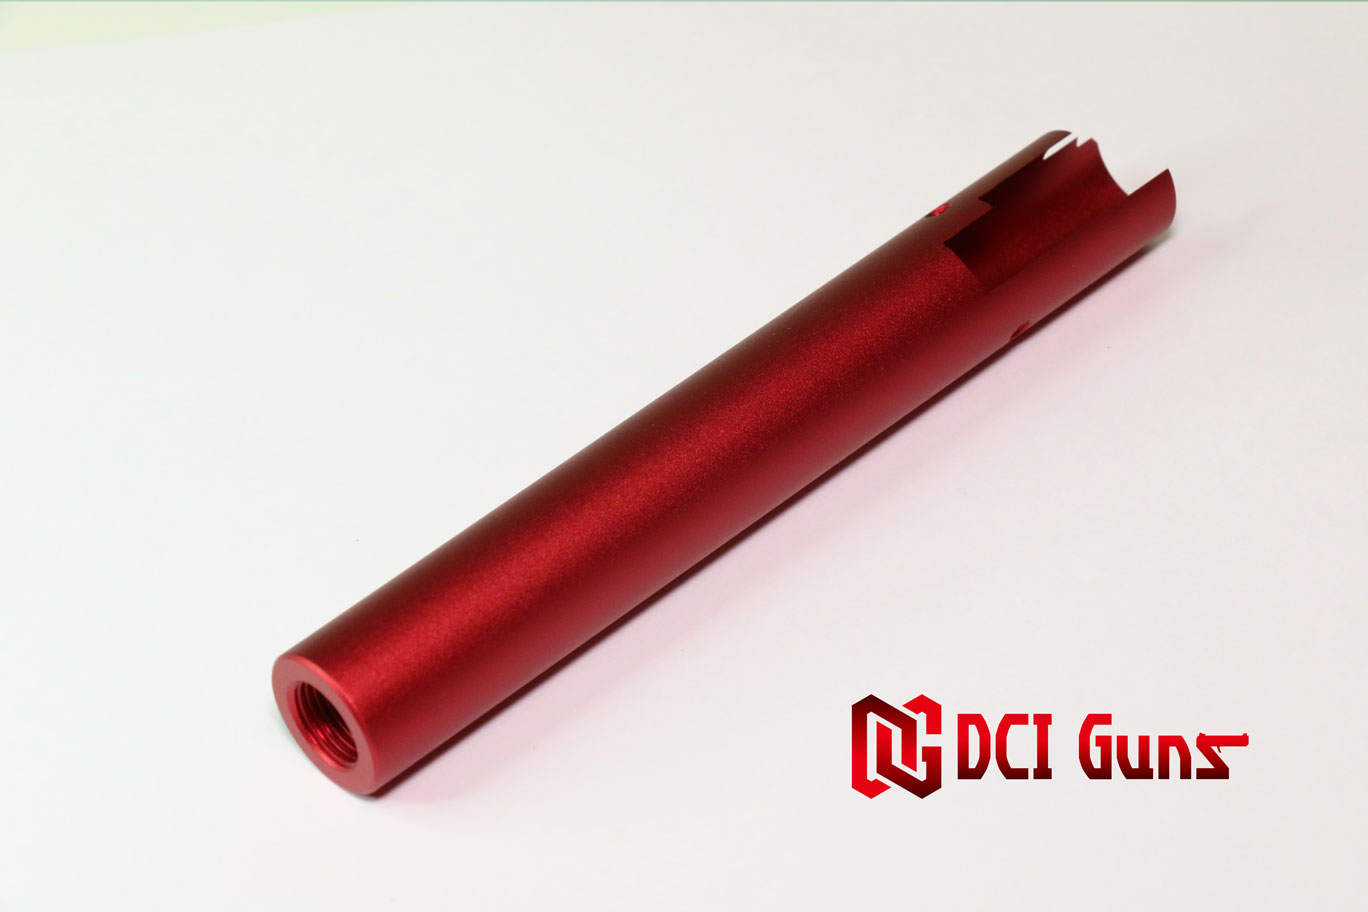 DCI Guns 東京マルイ ハイキャパ5.1用11mm正ネジメタルアウターバレル RED レッド 赤 エアガン エアーガン ガスガン ブローバック カスタム サバゲー サバイバルゲーム サイレンサー トレーサー